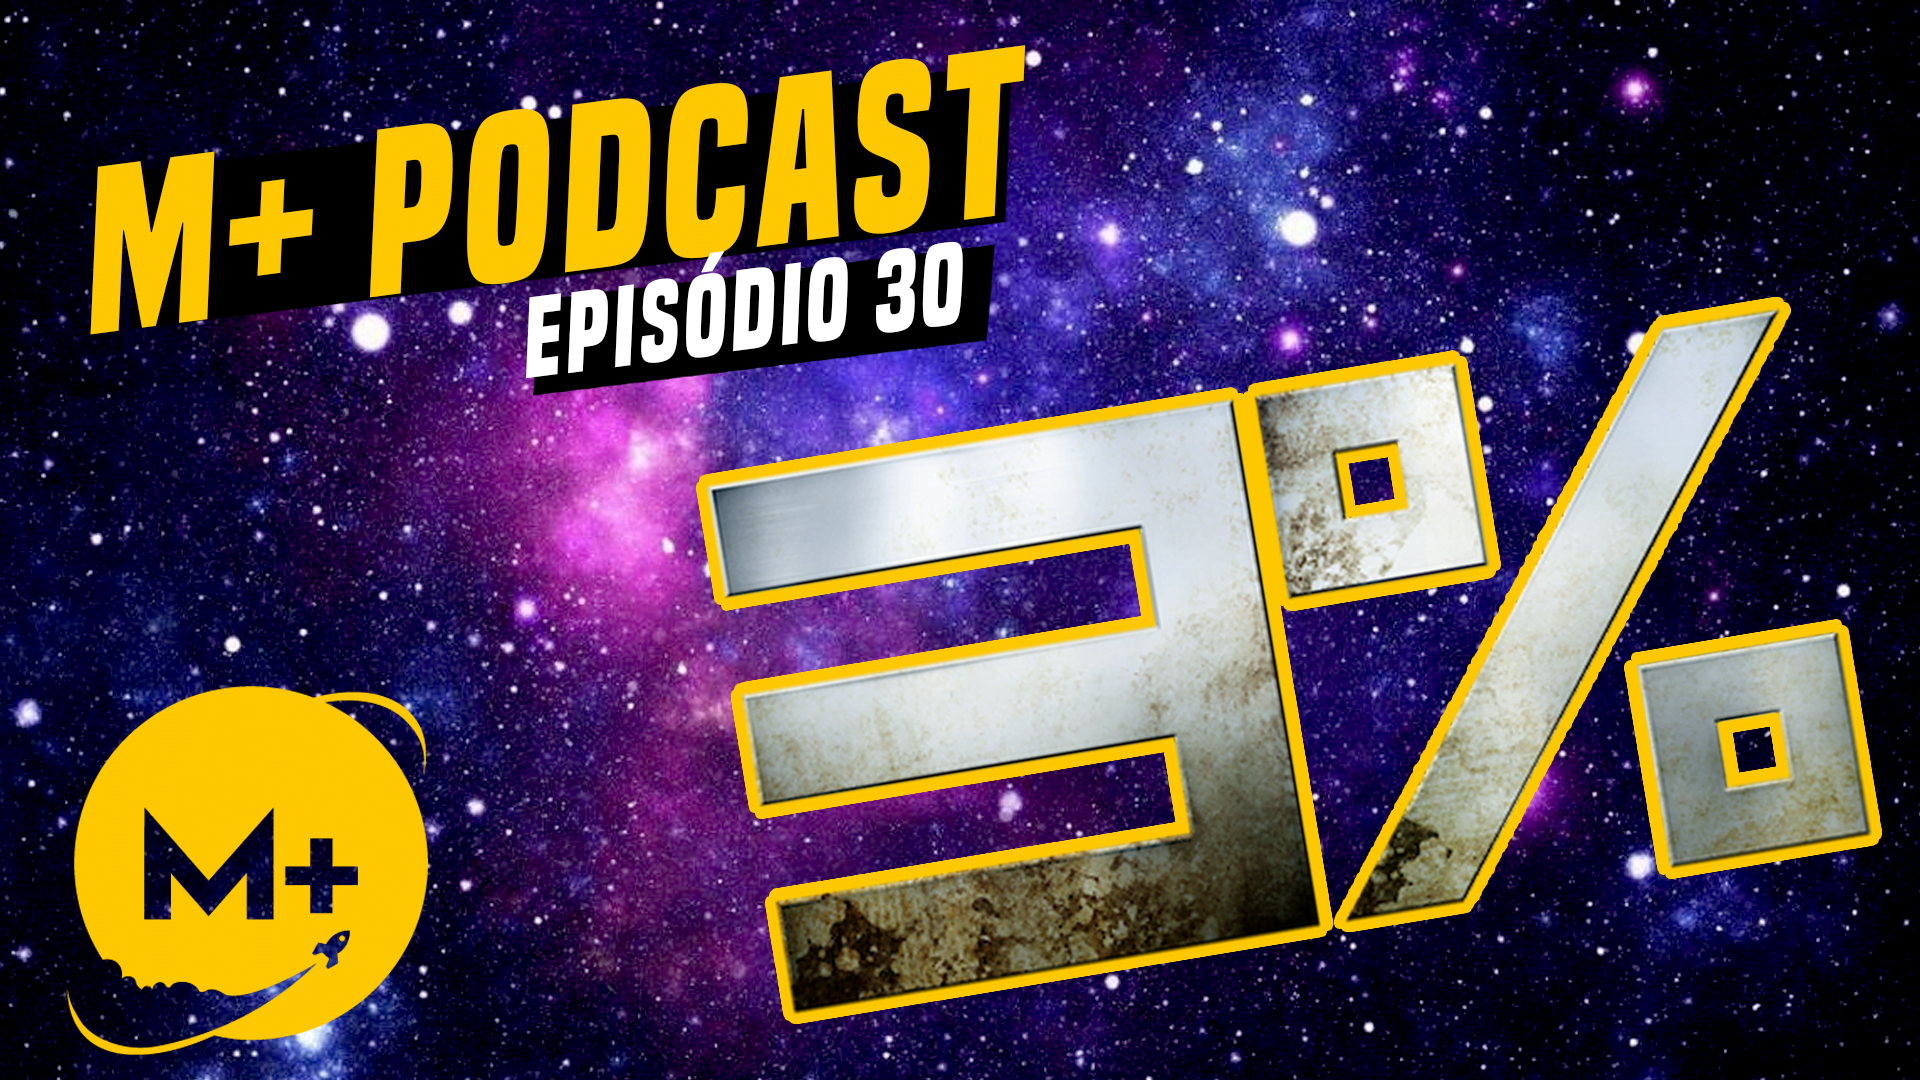 M+ Podcast 30 – Só vimos 3% da Série 3%